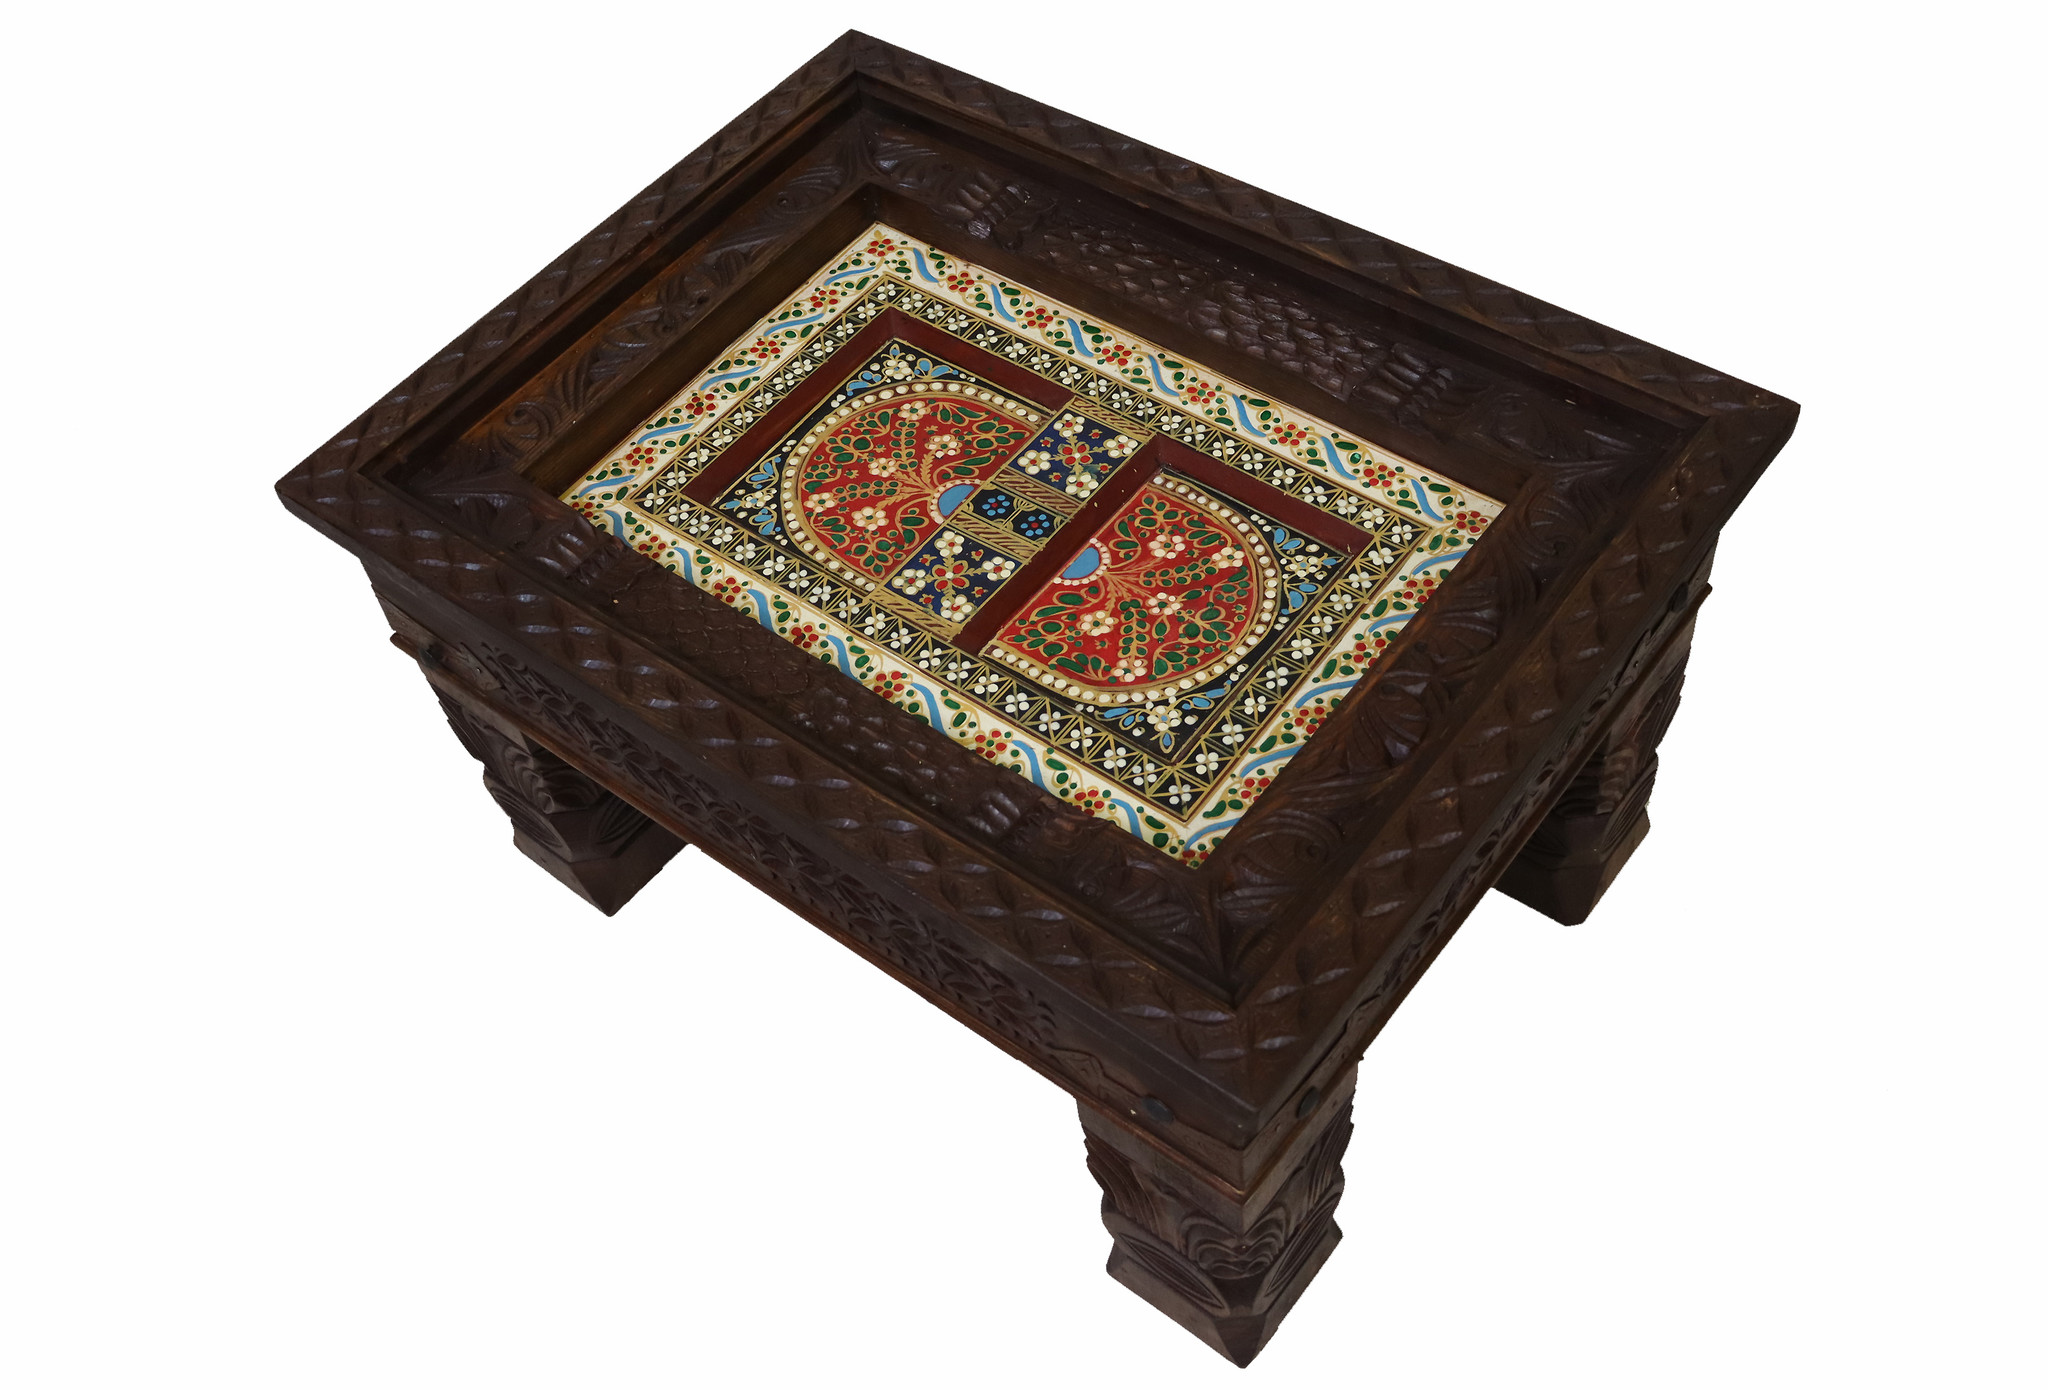 80x60 cm handgeschnitzt massivholz kolonialstil Wohnzimmertisch Tisch Couchtisch aus Afghanistan Nuristan Nr:23-4